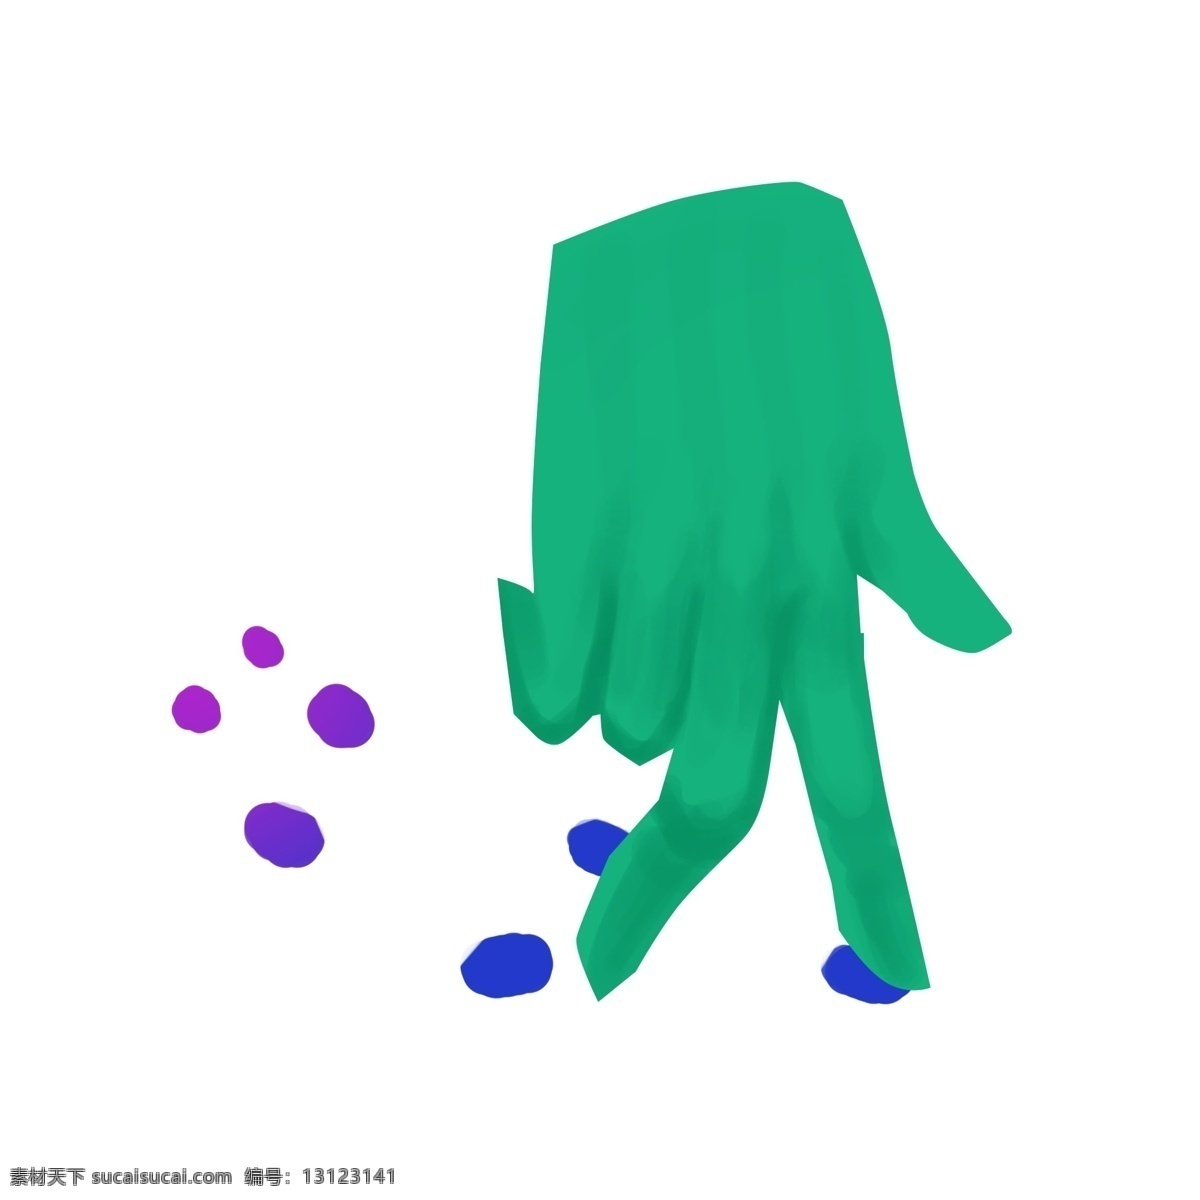 卡通 创意 行走 手势 行走的手势 手势插画 蓝色波点 假手插画 手指造型 卡通创意 绿色手掌插画